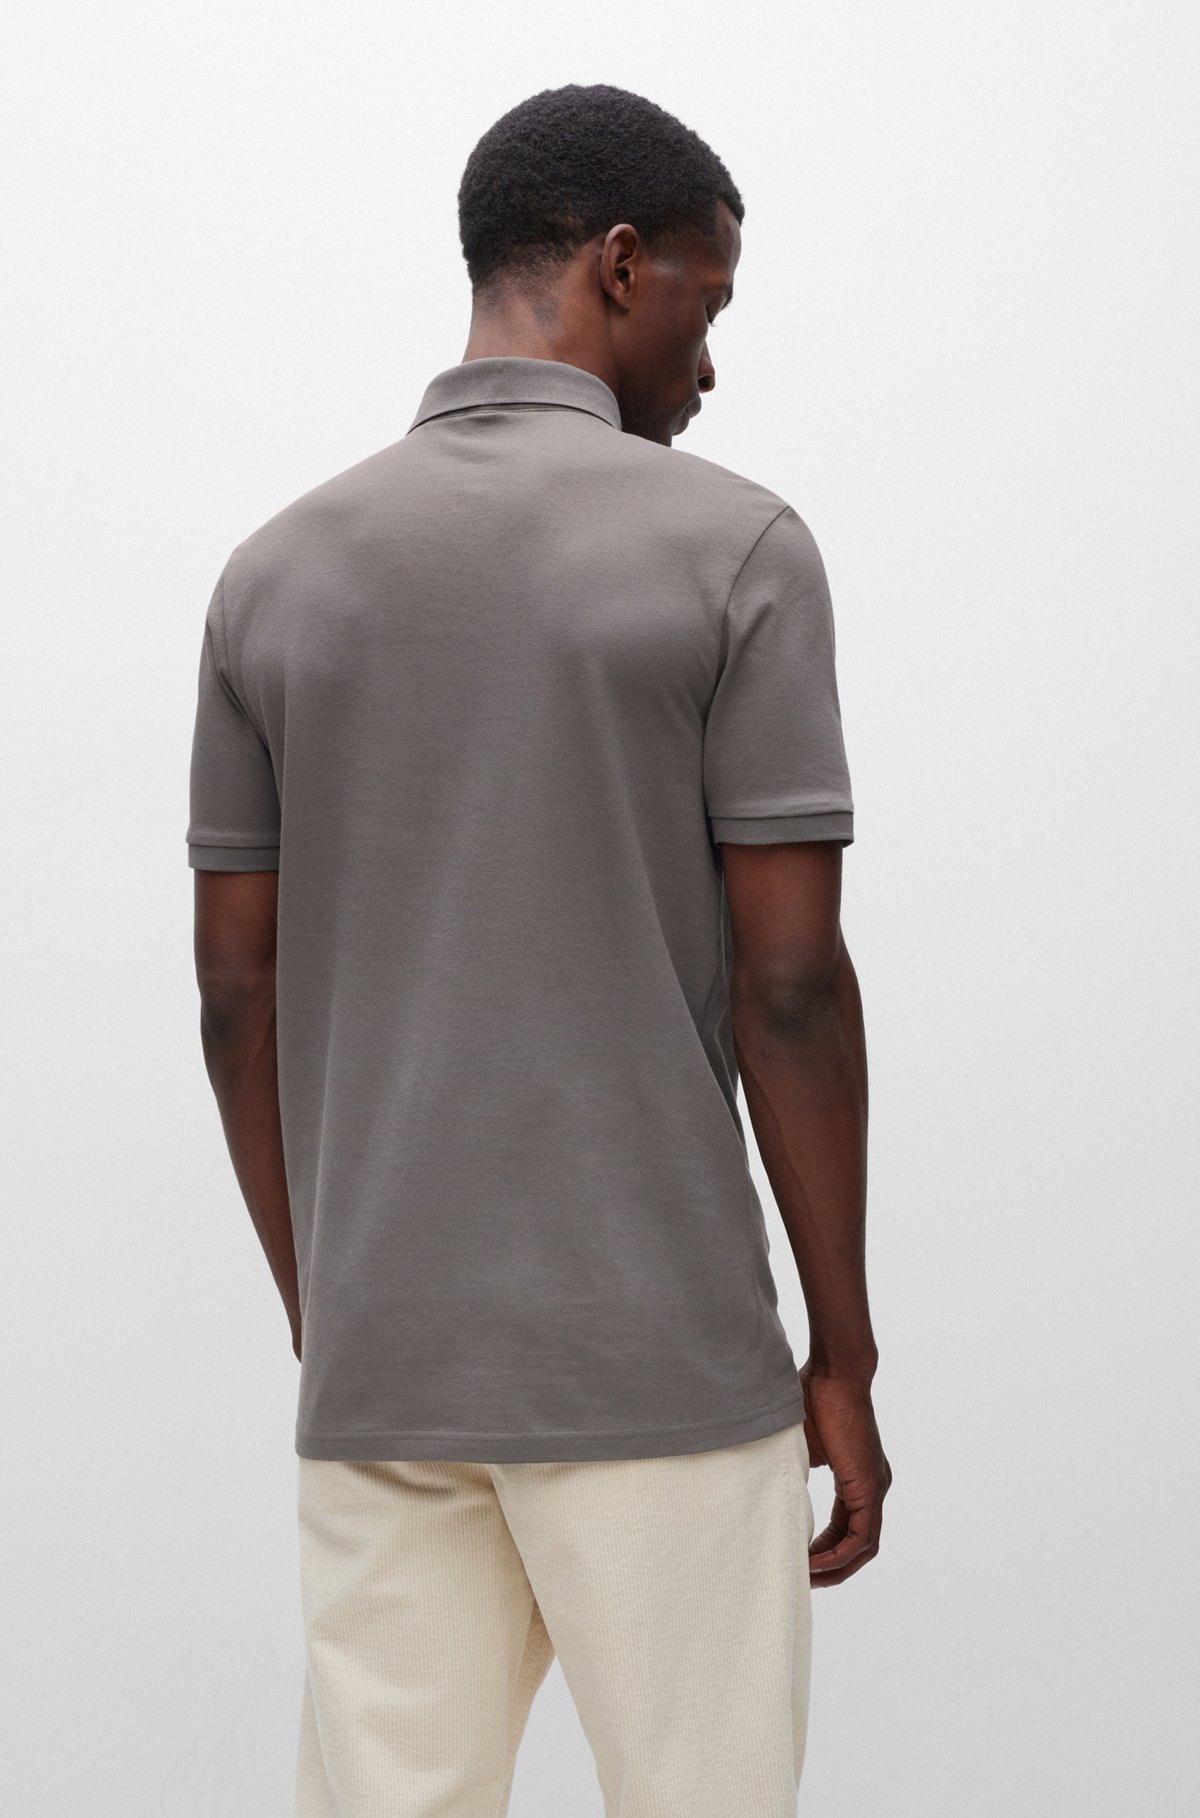 Slim-Fit Poloshirt aus Stretch-Baumwolle mit Logo-Aufnäher, Dunkelgrau